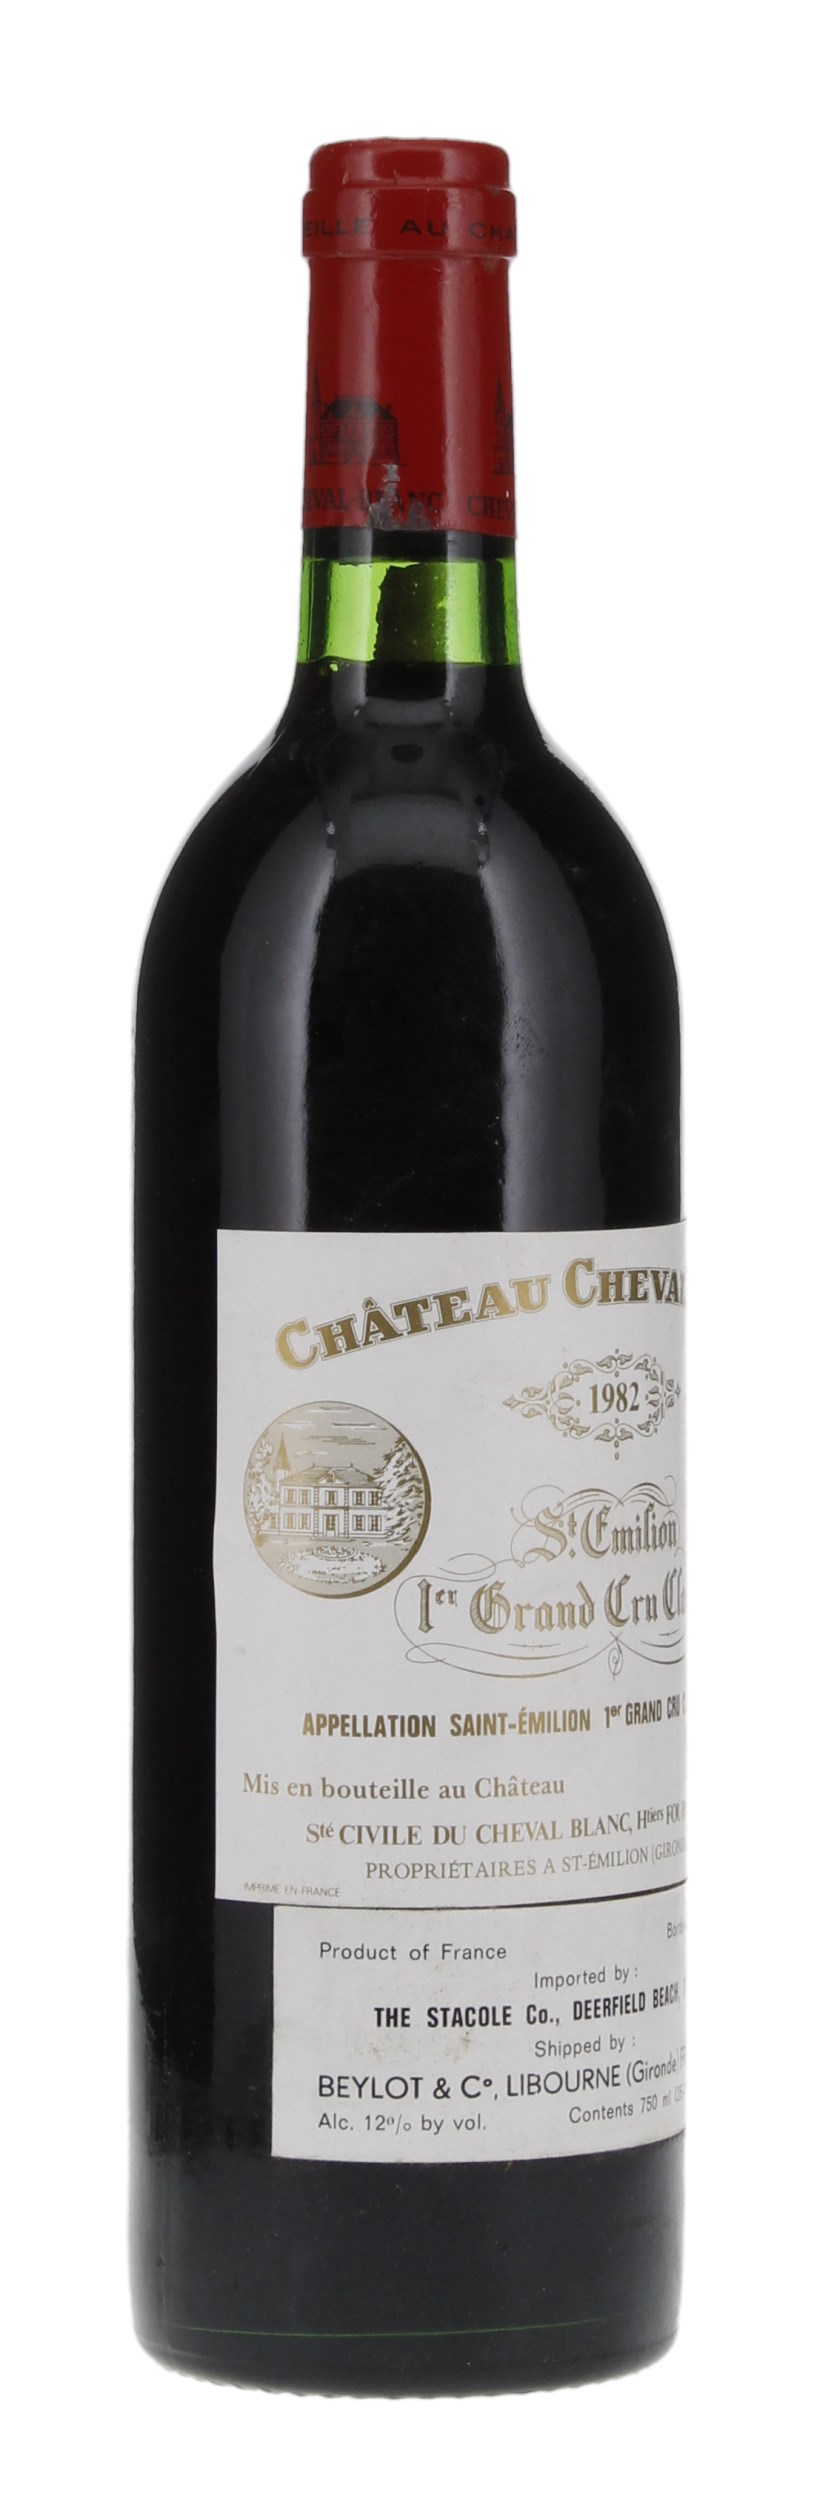 1982 Château Cheval-Blanc, 750ml